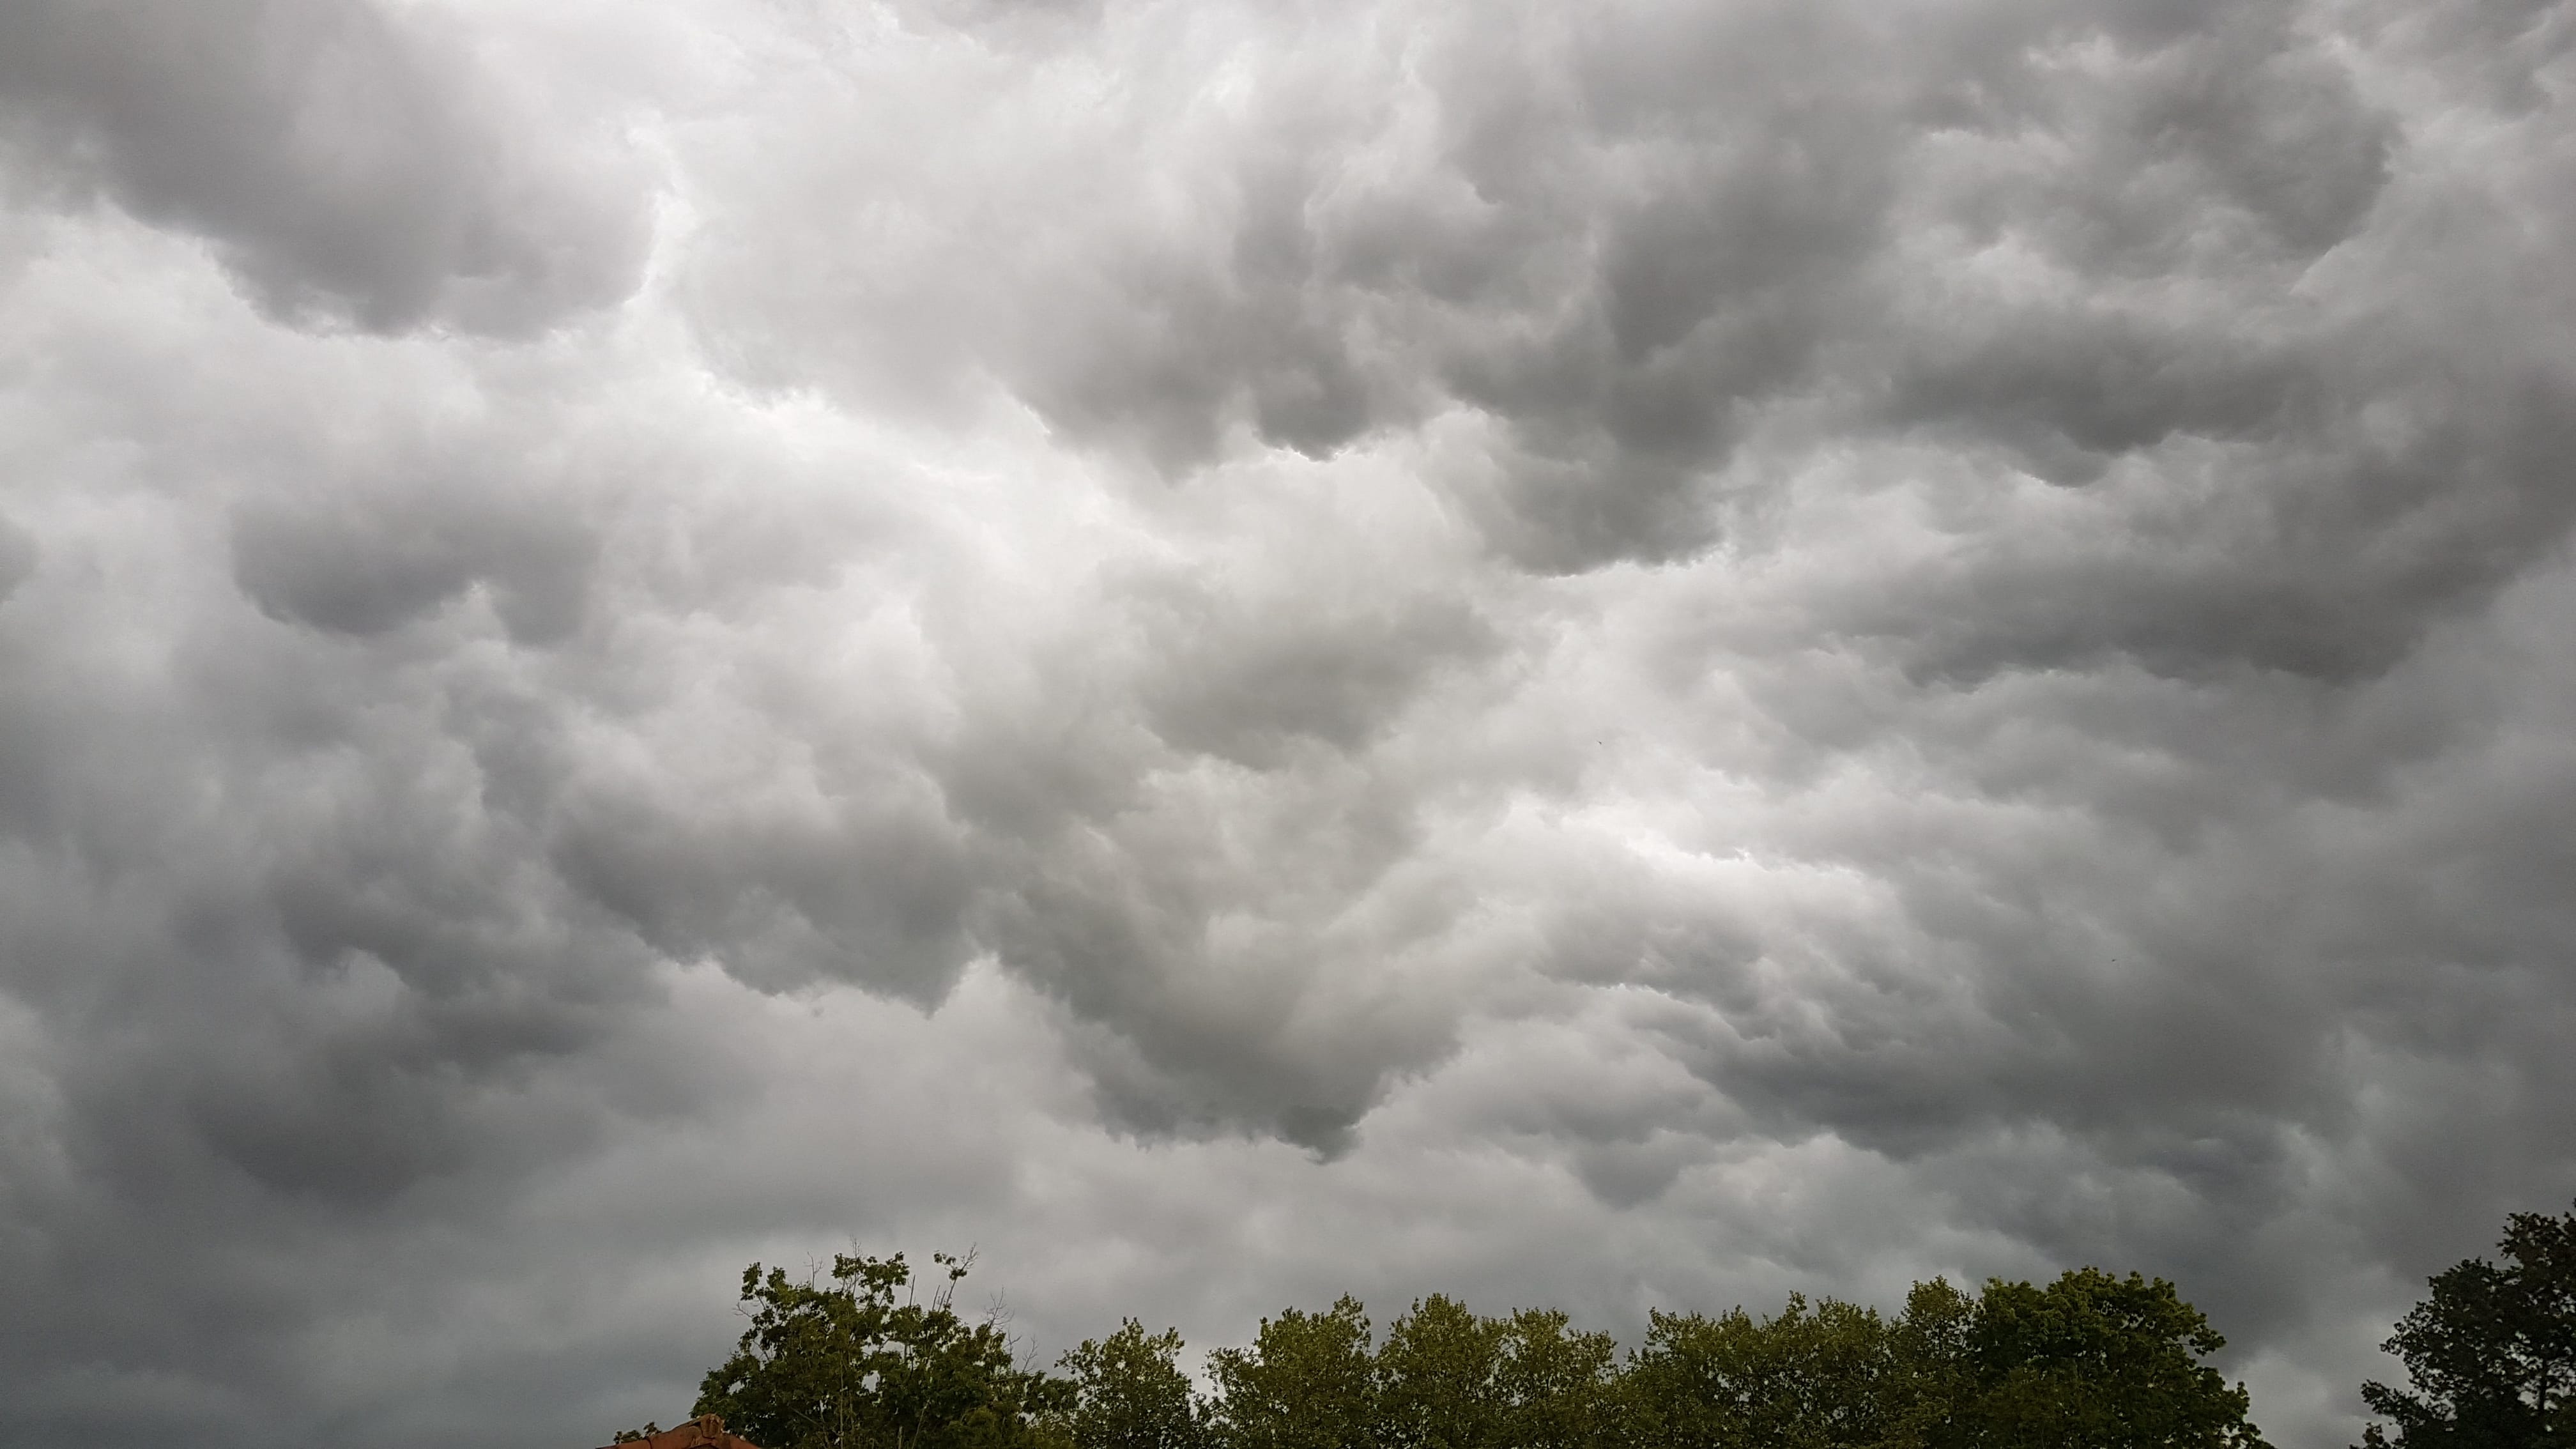 Petite ambiance de fin du monde à l'approche des orages, à Habas dans le sud des Landes... - 25/04/2020 19:25 - Cyril Dubos